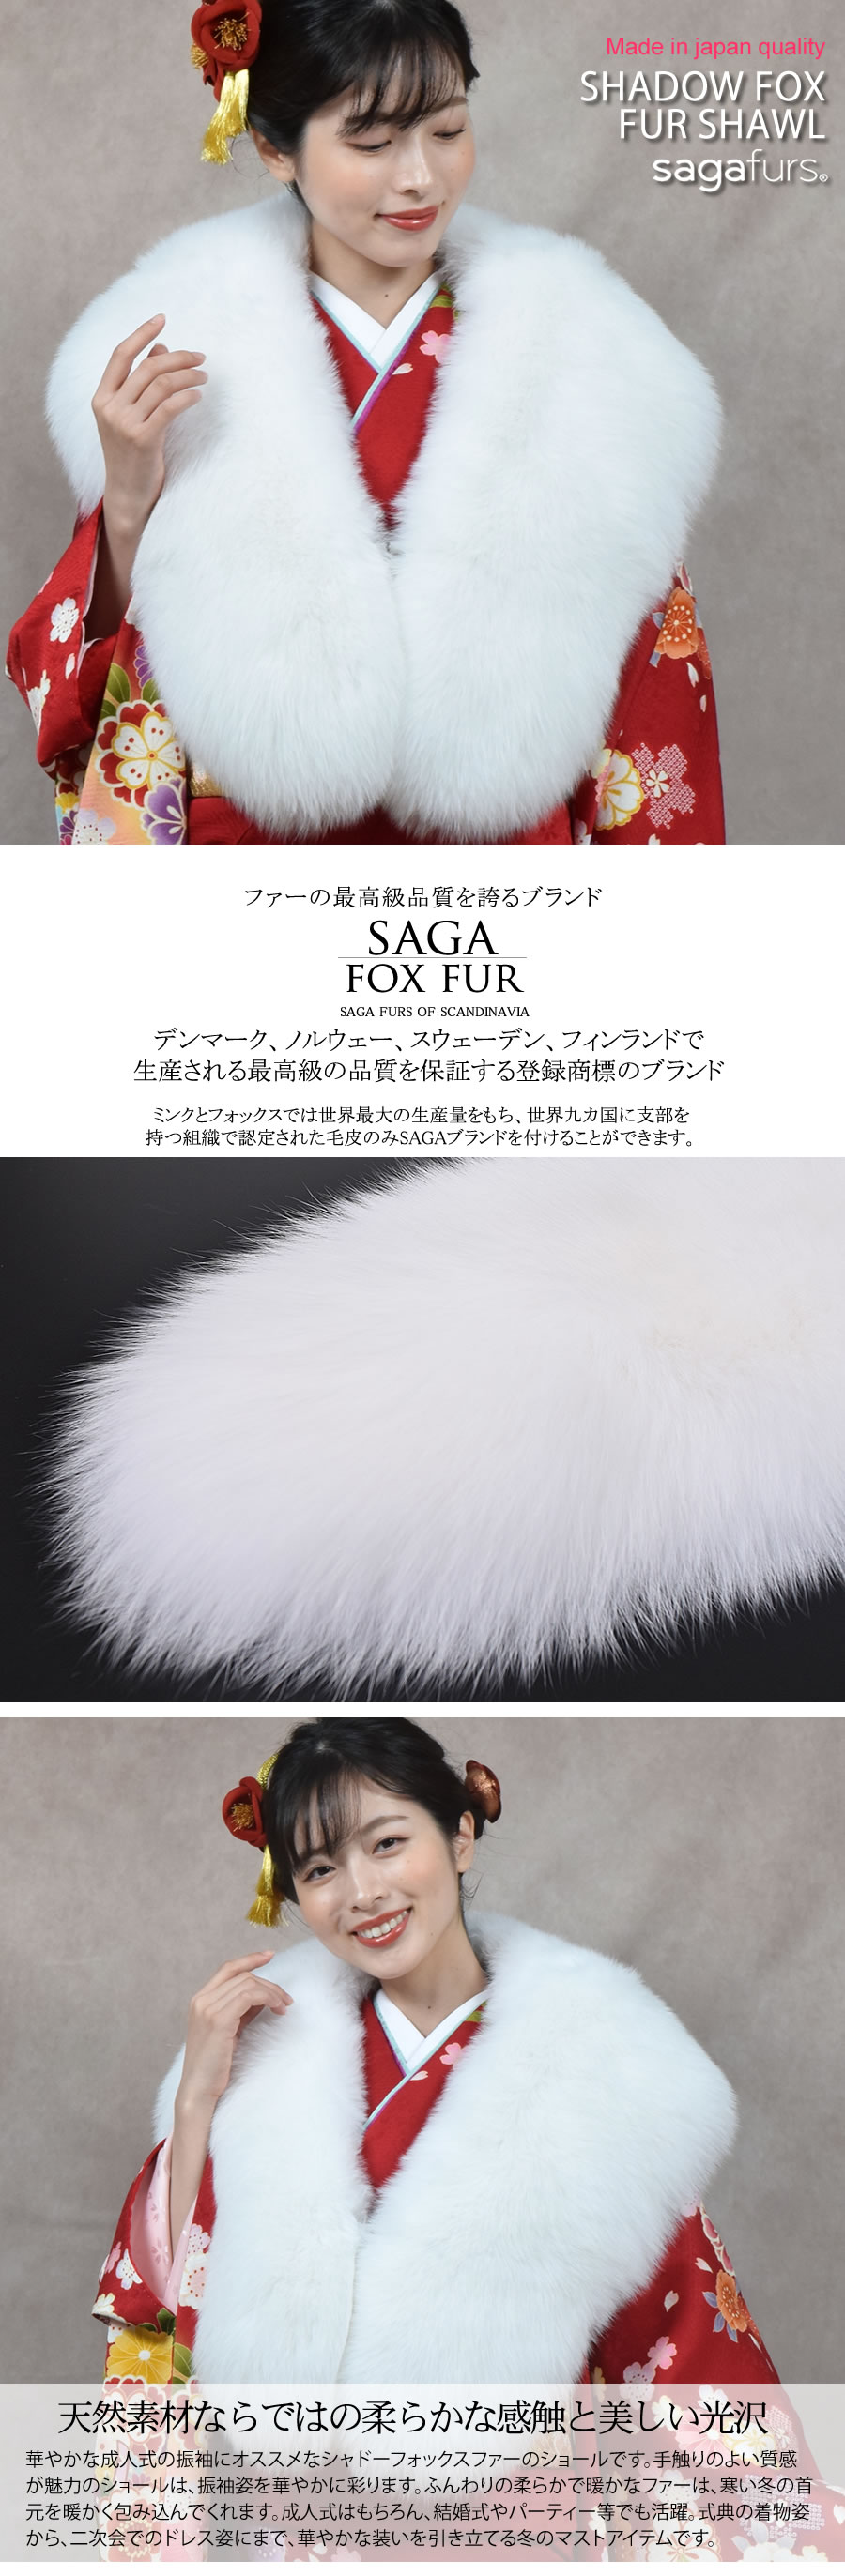 日本製 成人式 SAGA シャドーフォックス ストール ショール 振袖 着物 